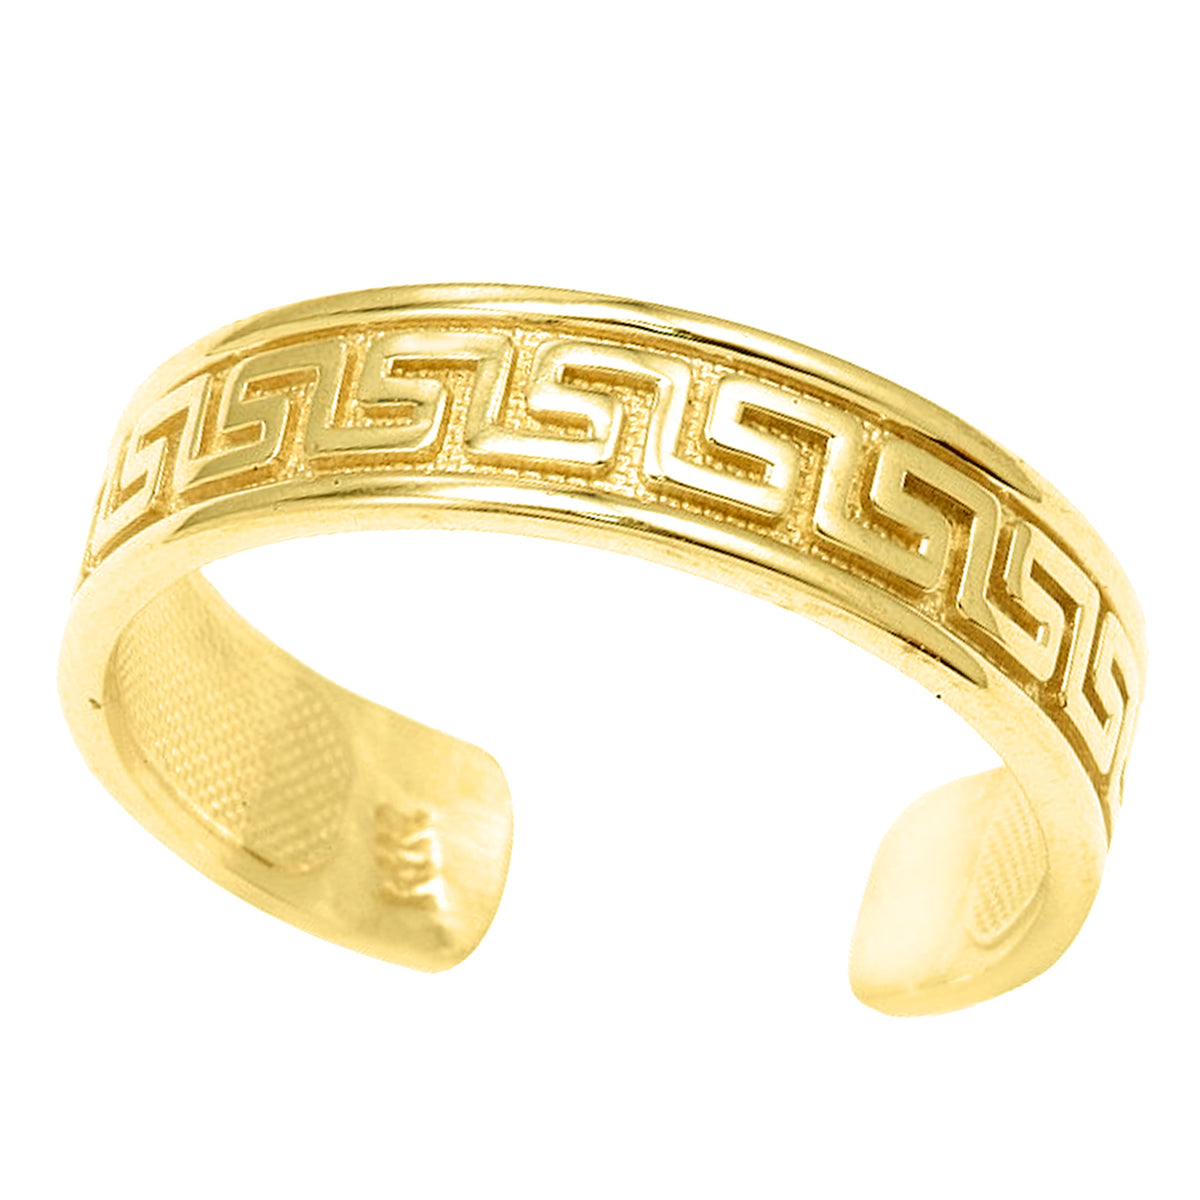 Anello in oro giallo 14 carati con intarsio curvo a forma di chiave greca, stile polsino regolabile, gioielli di design per uomini e donne